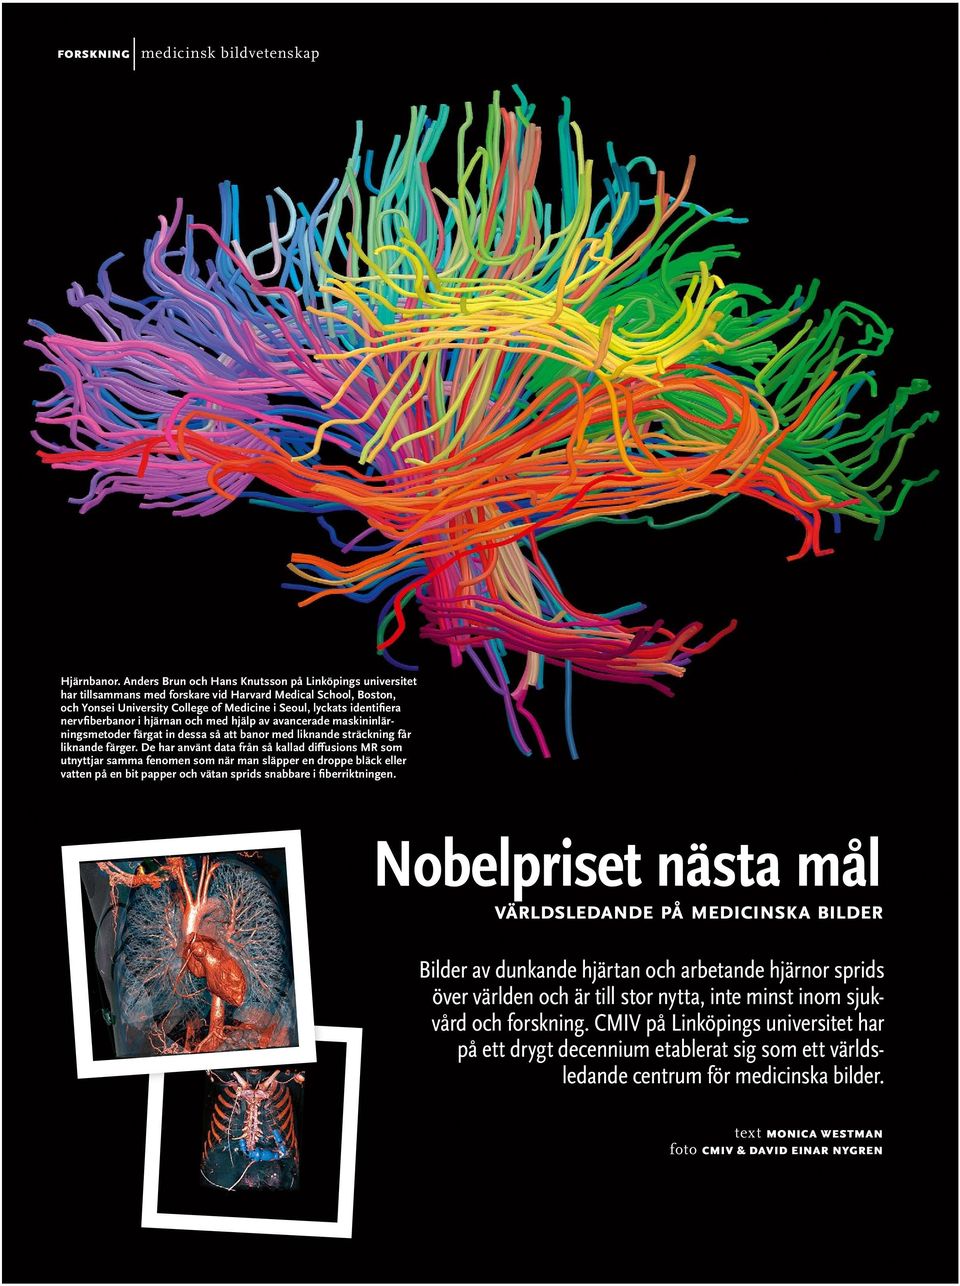 nervfiberbanor i hjärnan och med hjälp av avancerade maskininlärningsmetoder färgat in dessa så att banor med liknande sträckning får liknande färger.